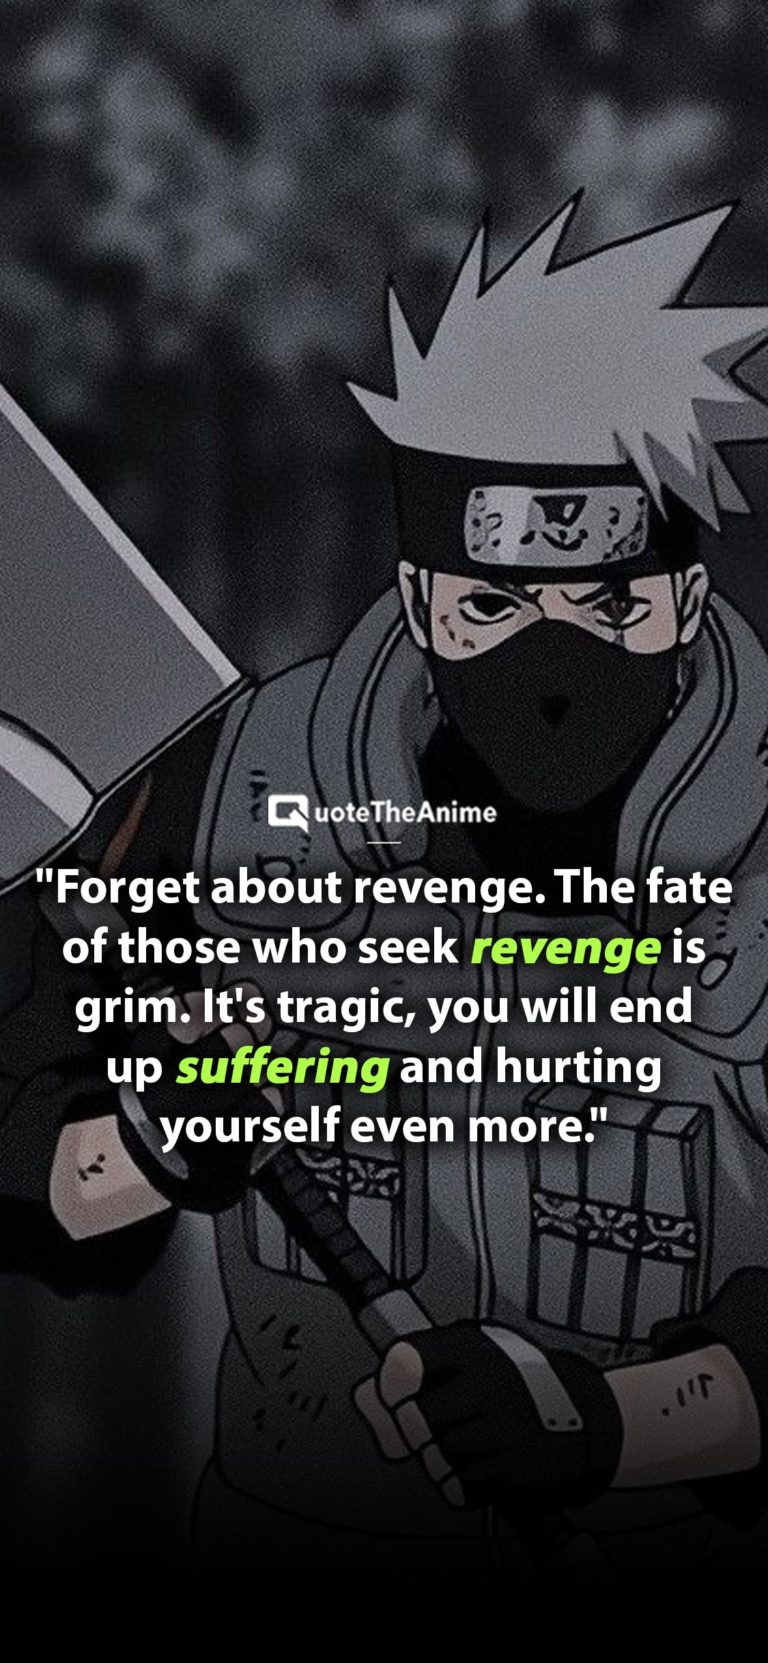 Naruto Sayings Wallpapers